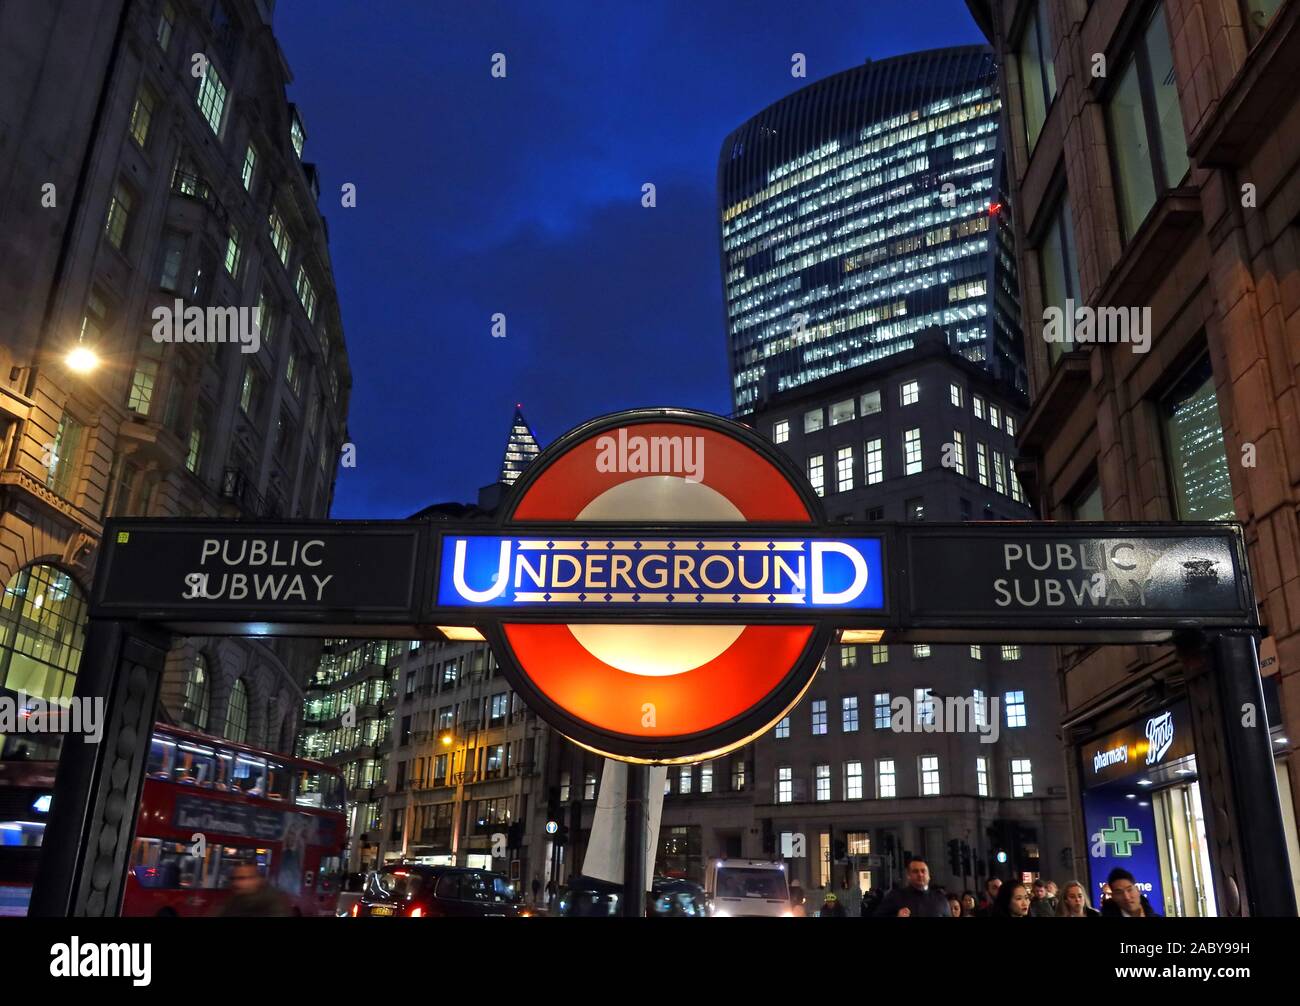 Panneau de métro TfL London de style ancien, au crépuscule dans la ville de Londres, Bank tube Station, City of London Financial District Behind, Angleterre, Royaume-Uni Banque D'Images